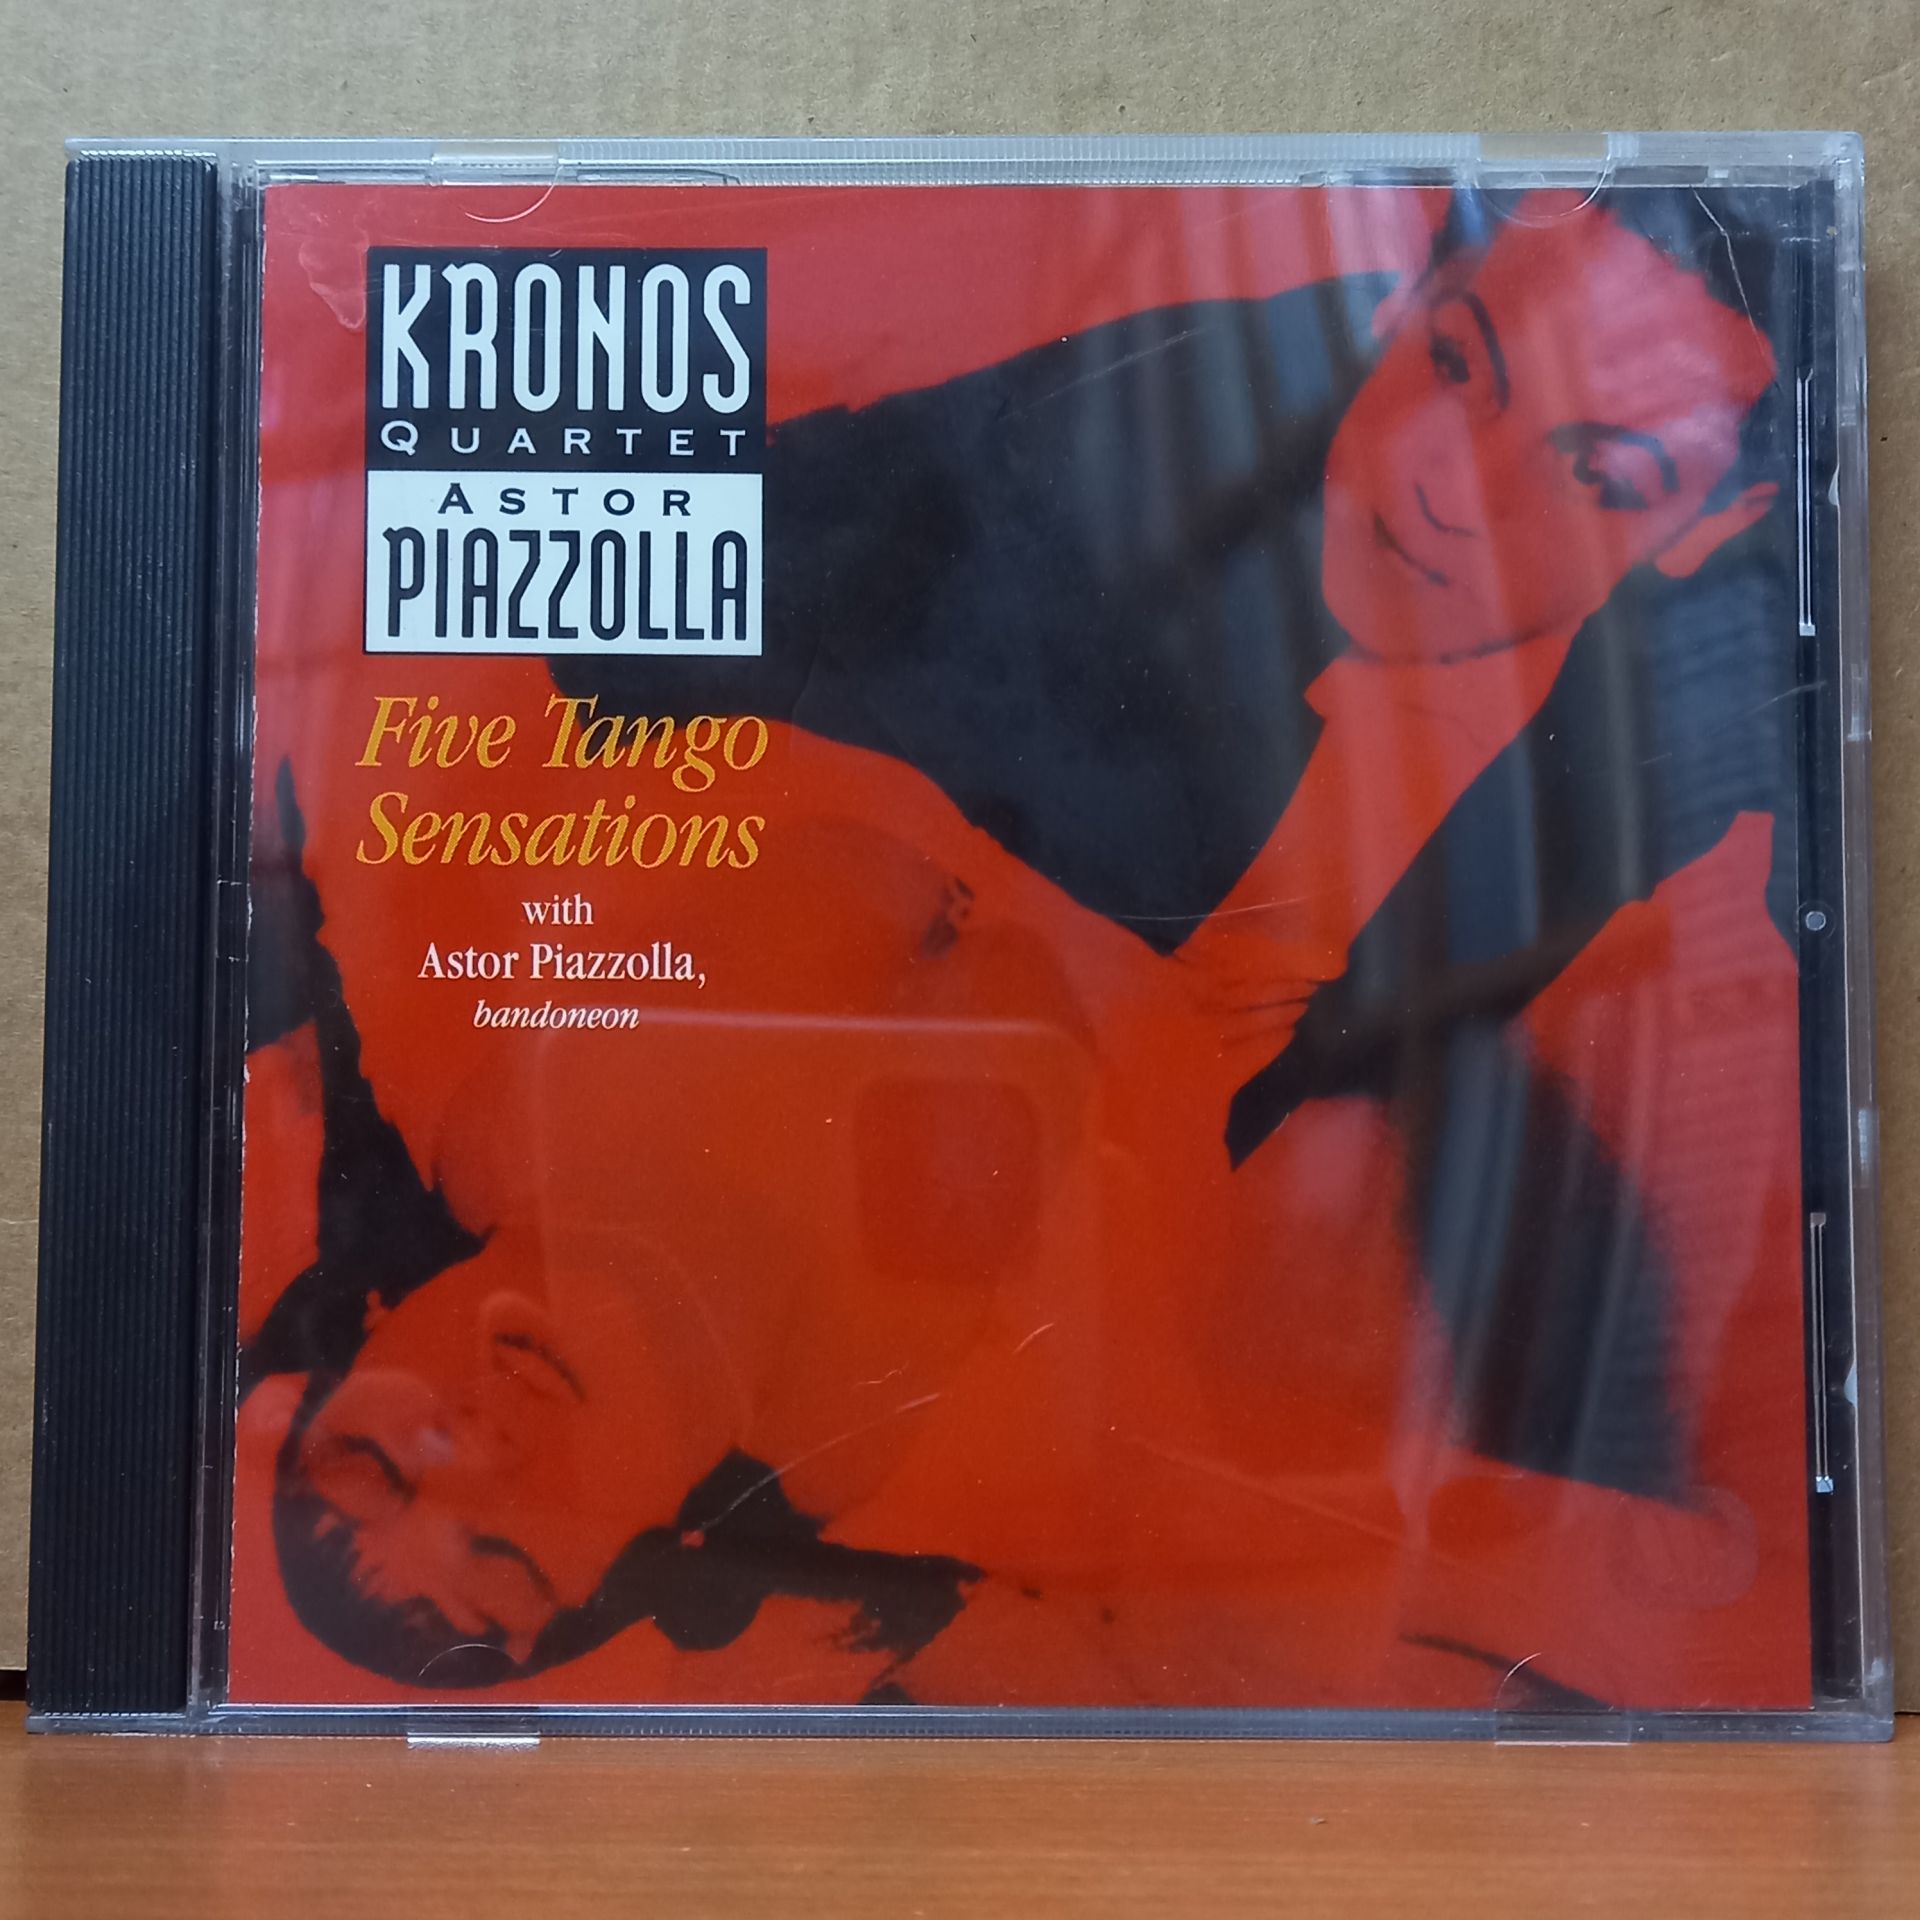 KRONOS QUARTET, ASTOR PIAZZOLLA - FIVE TANGO SENSATIONS (1991) - CD 2.EL